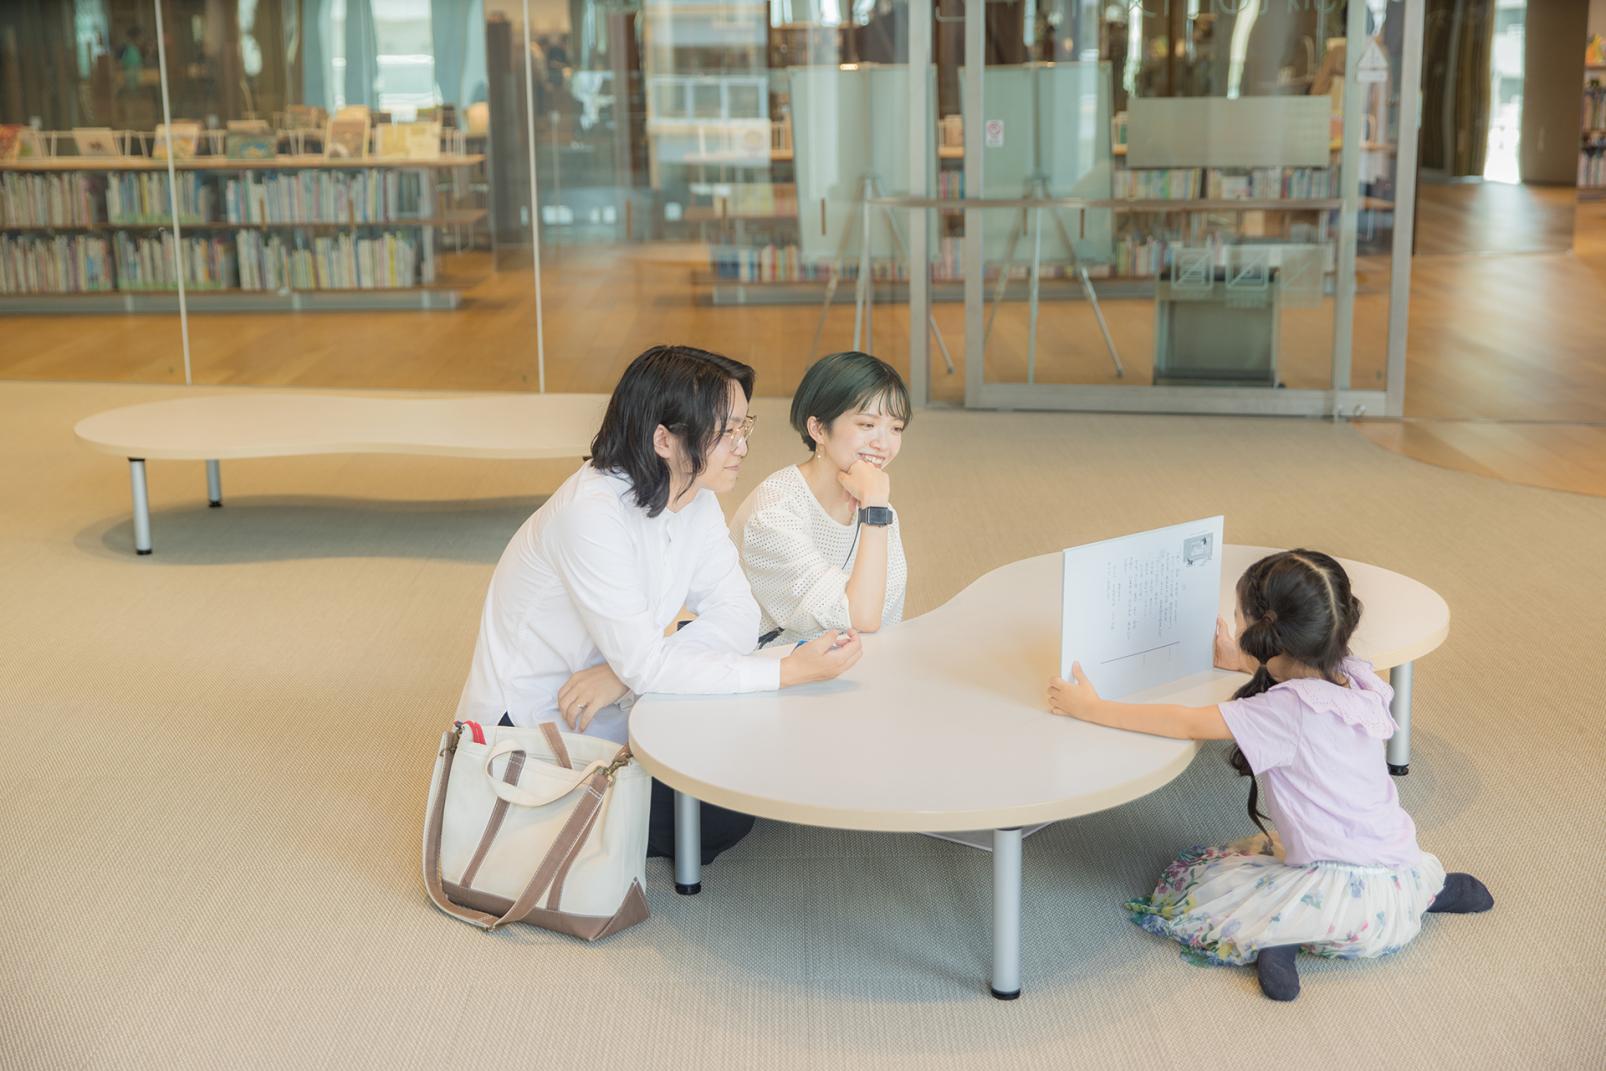 『富山市立図書館』で、お気に入りの本を探す-1